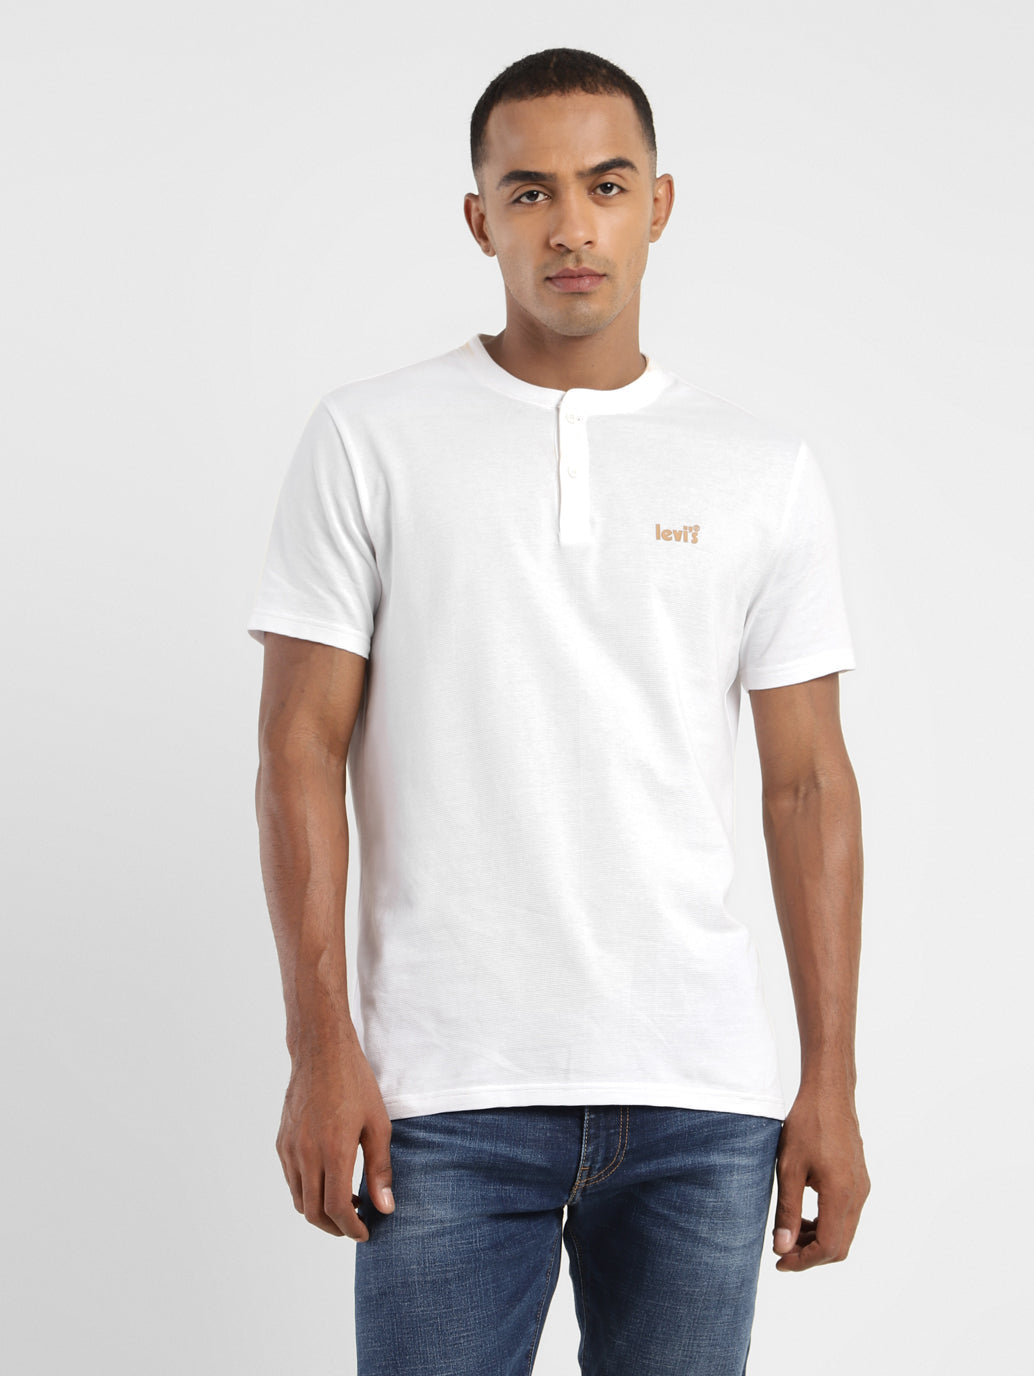 Men's Solid Henley Neck T-shirt